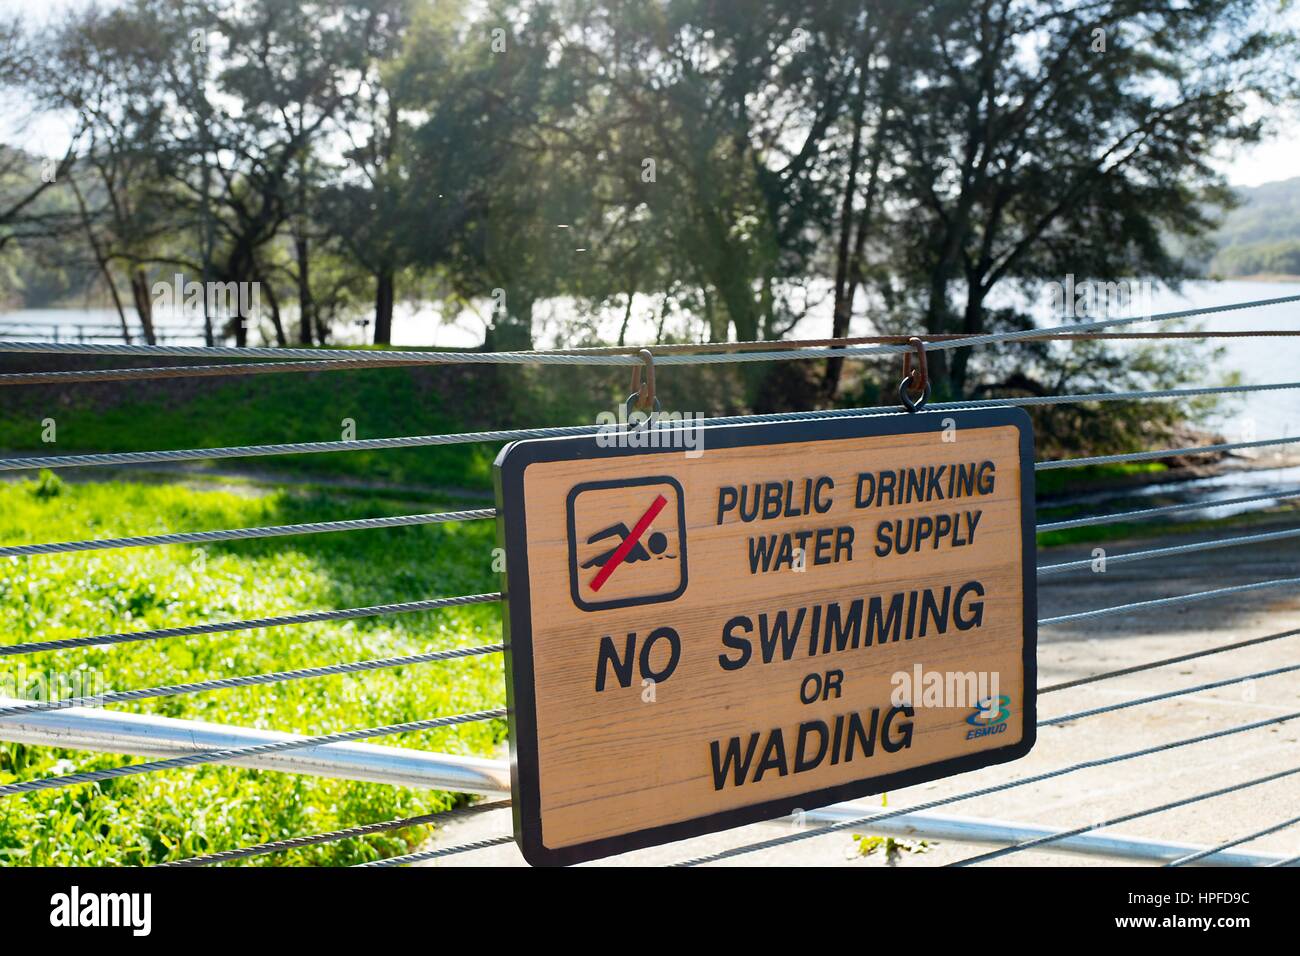 Schild Warnung Besucher, dass die Lafayette Reservoir ein pubic Trinkwasser liefern und dass Schwimmen oder waten ist verboten, Lafayette, Kalifornien, 16. Februar 2017. Stockfoto